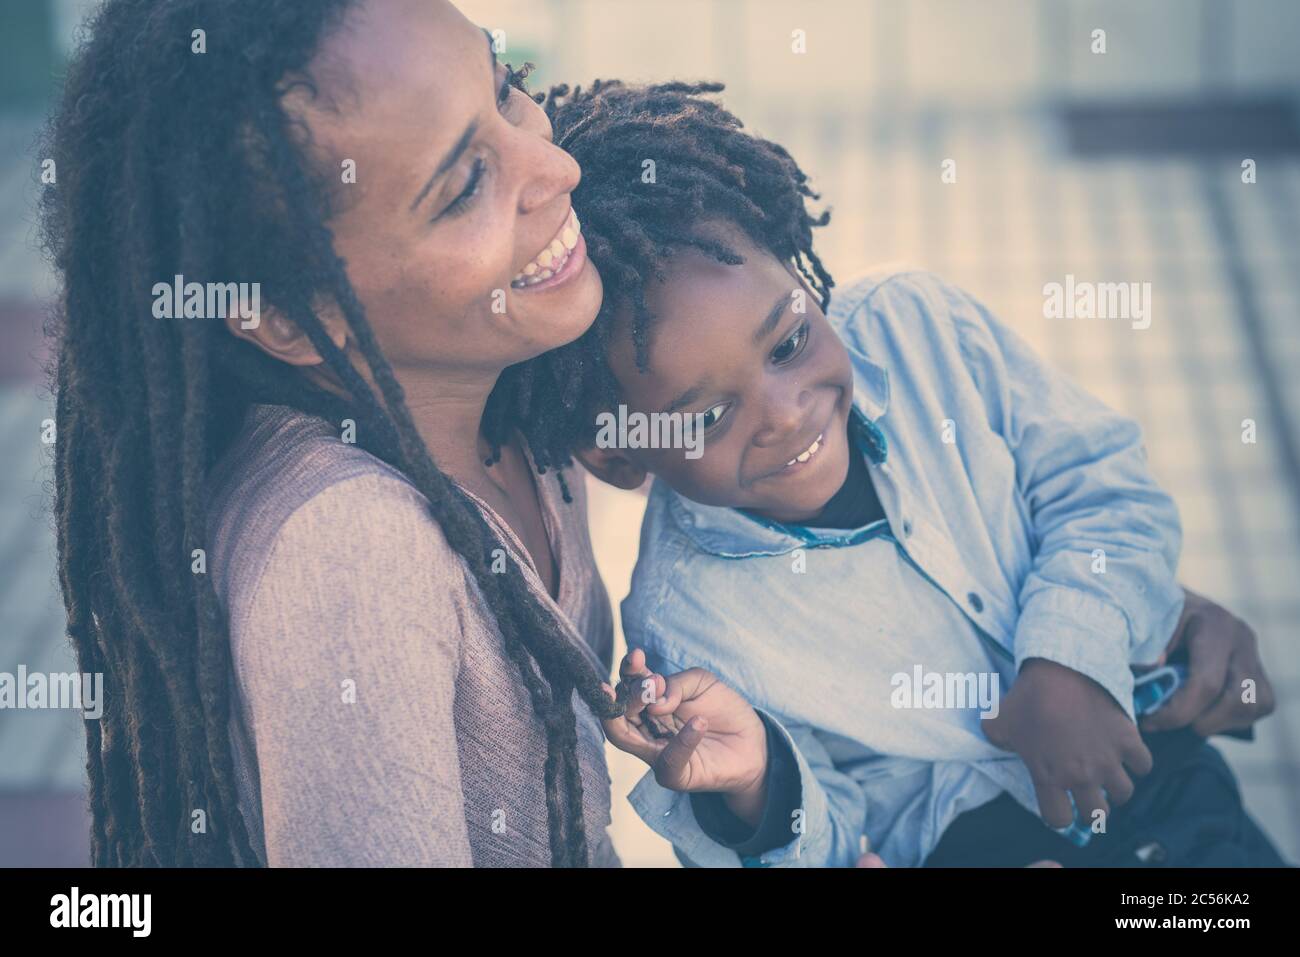 Famiglia felice e divertente tempo insieme - madre e figlio nero razza africana persone divertirsi al parco - amore per la madre e il figlio giovane - Dreadlocks ha Foto Stock